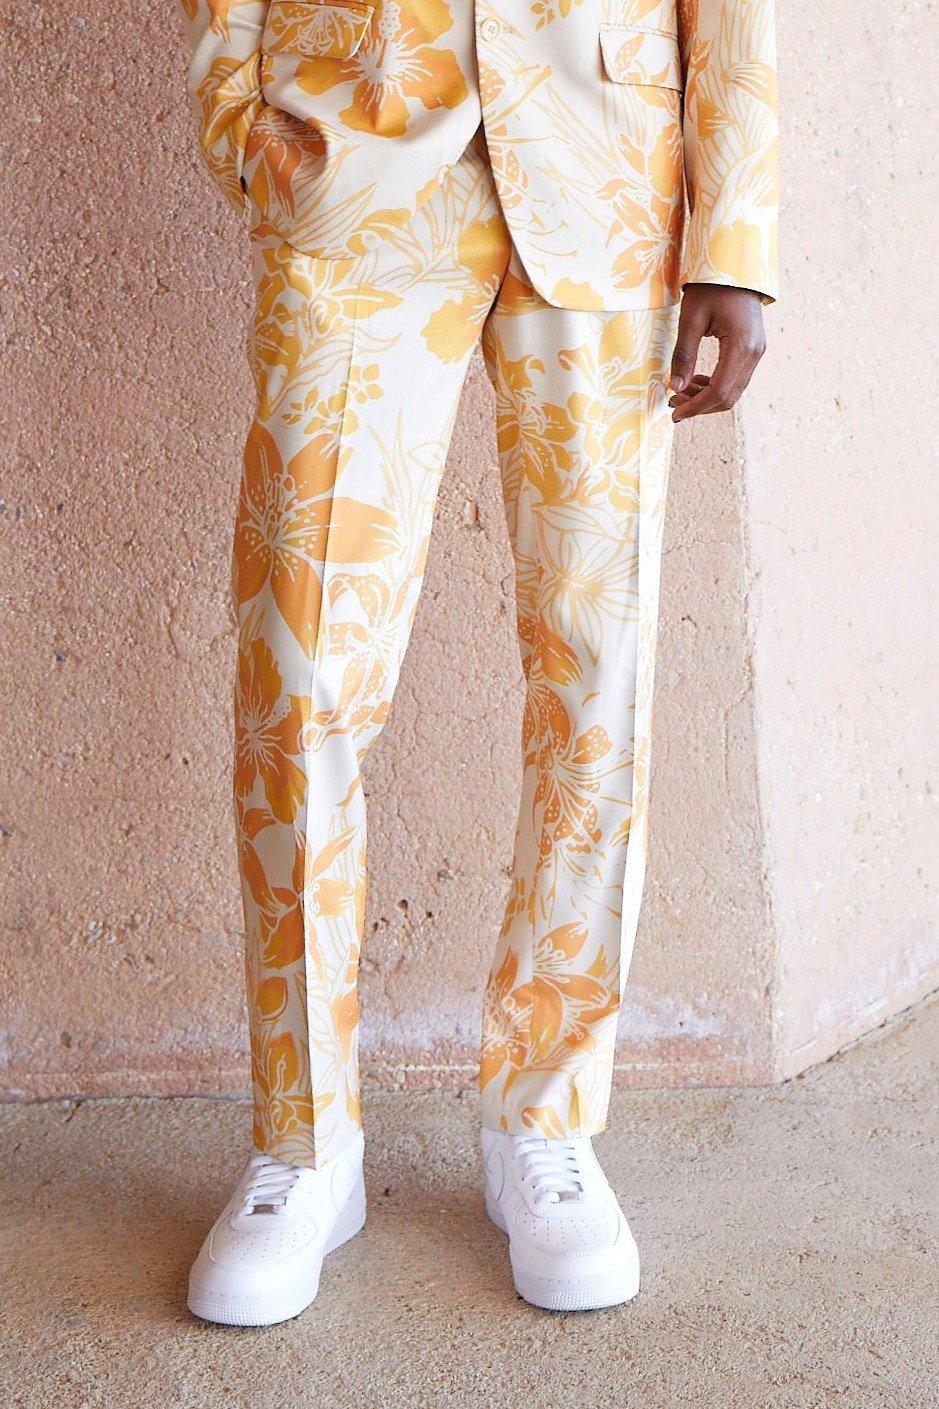 men's slim fit printed floral suit trousers - cream - 28, cream